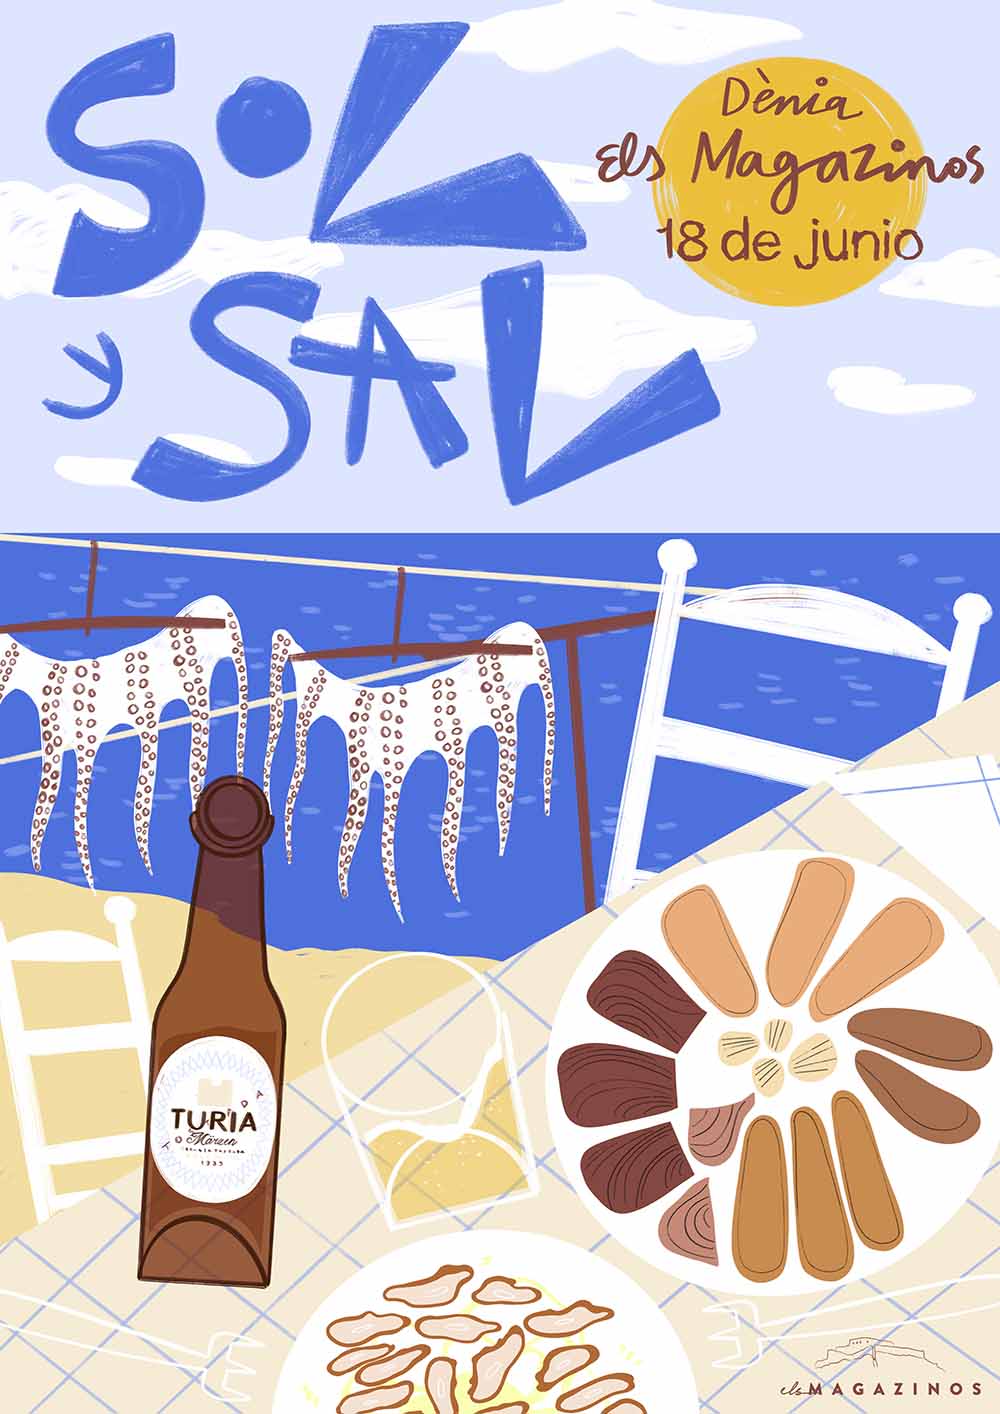 Cartel Sol y Sal. Salazones-atún-pescado seco Els Magazinos Denia-2a